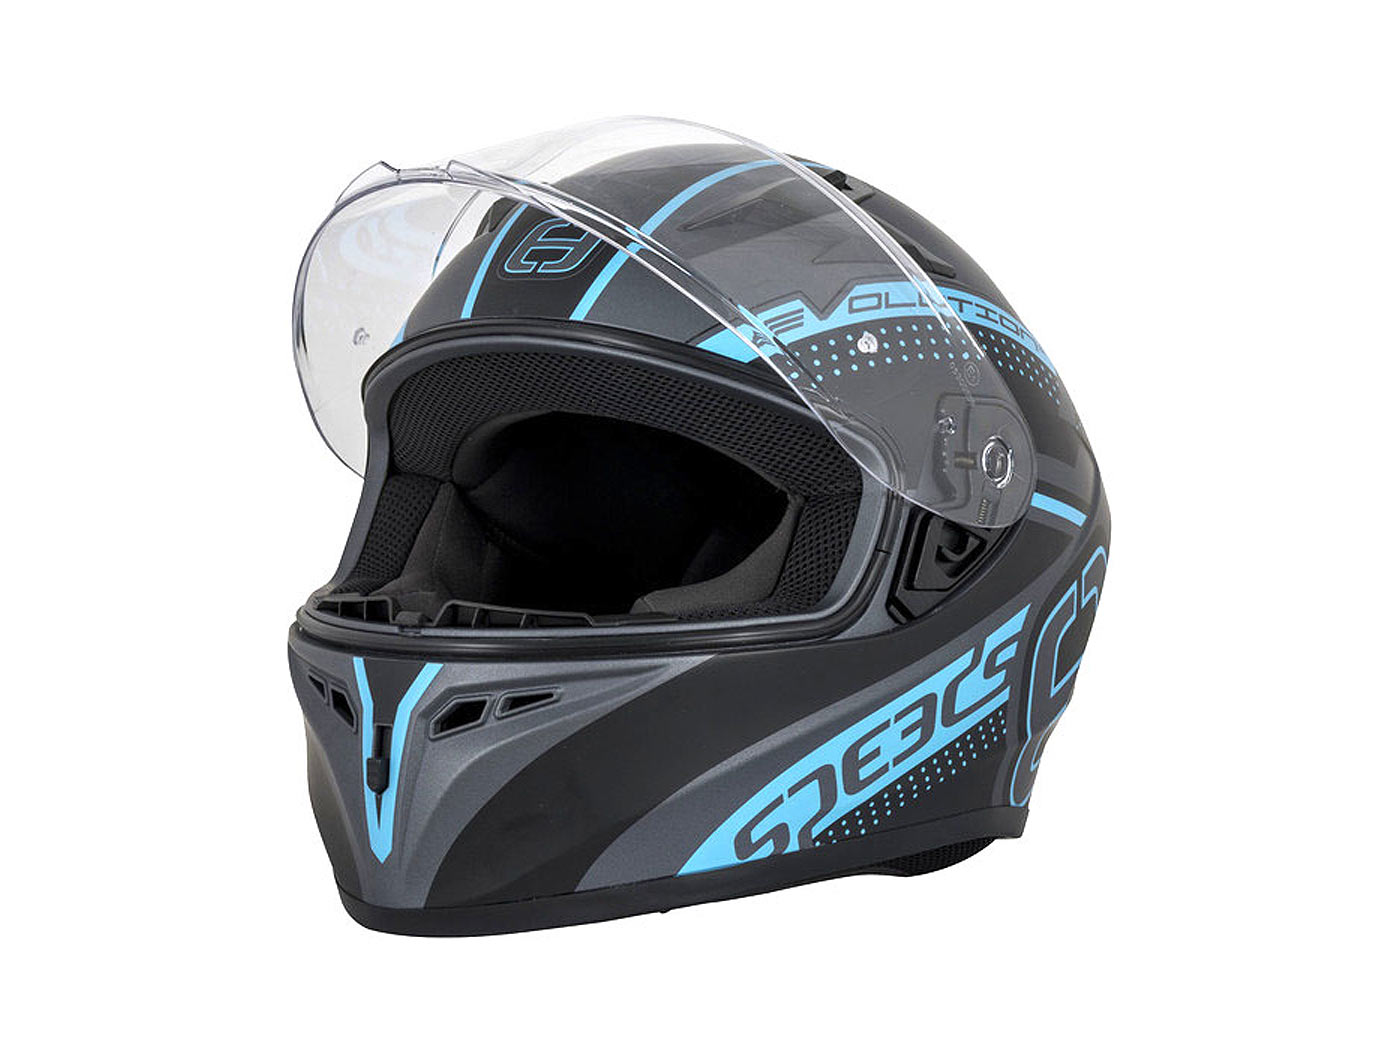 Helm Speeds Evo III schwarz/titan/blau - Größe L